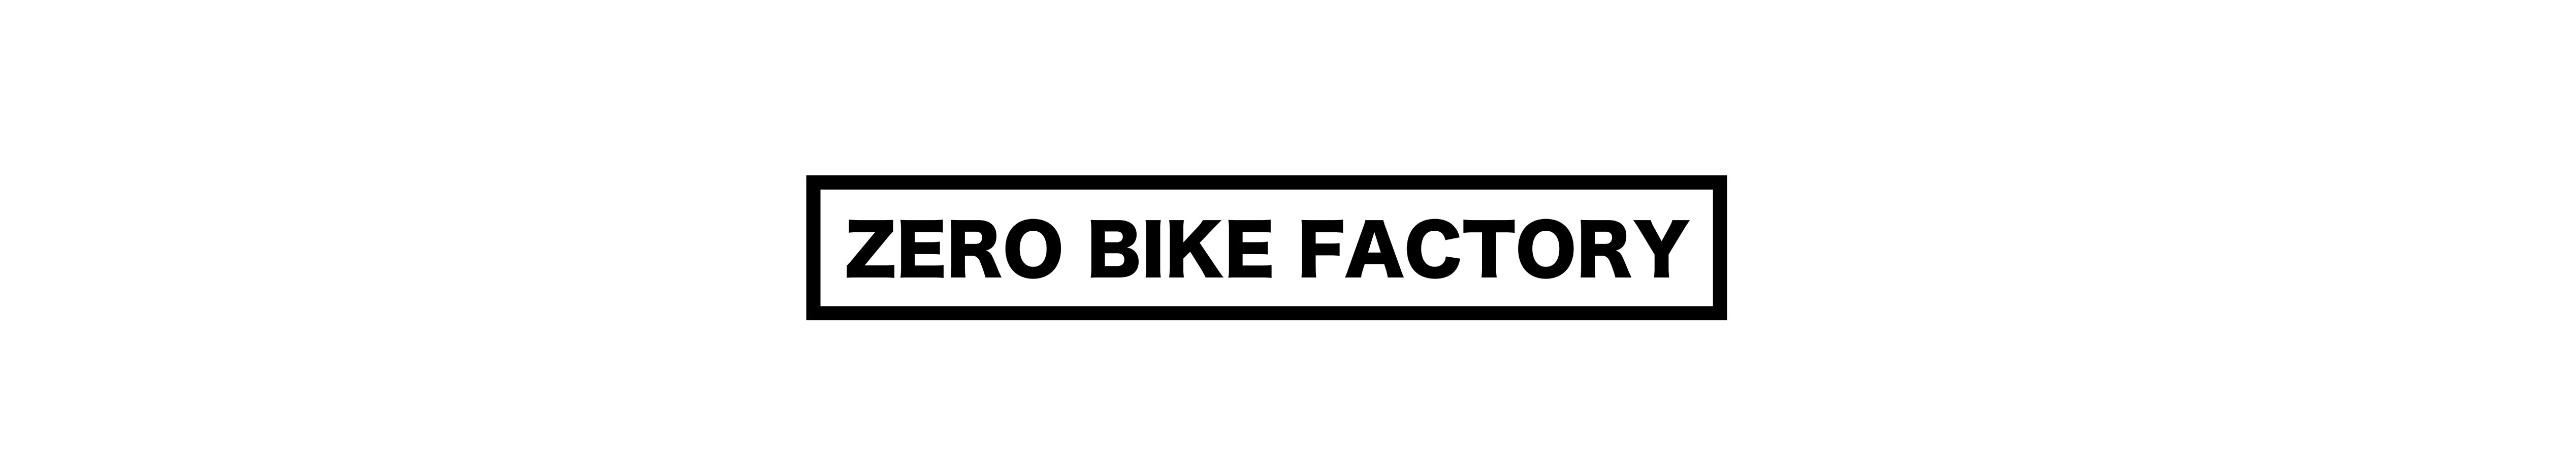 キッズバイクのカスタム通販専門店 ZERO BIKE FACTORY